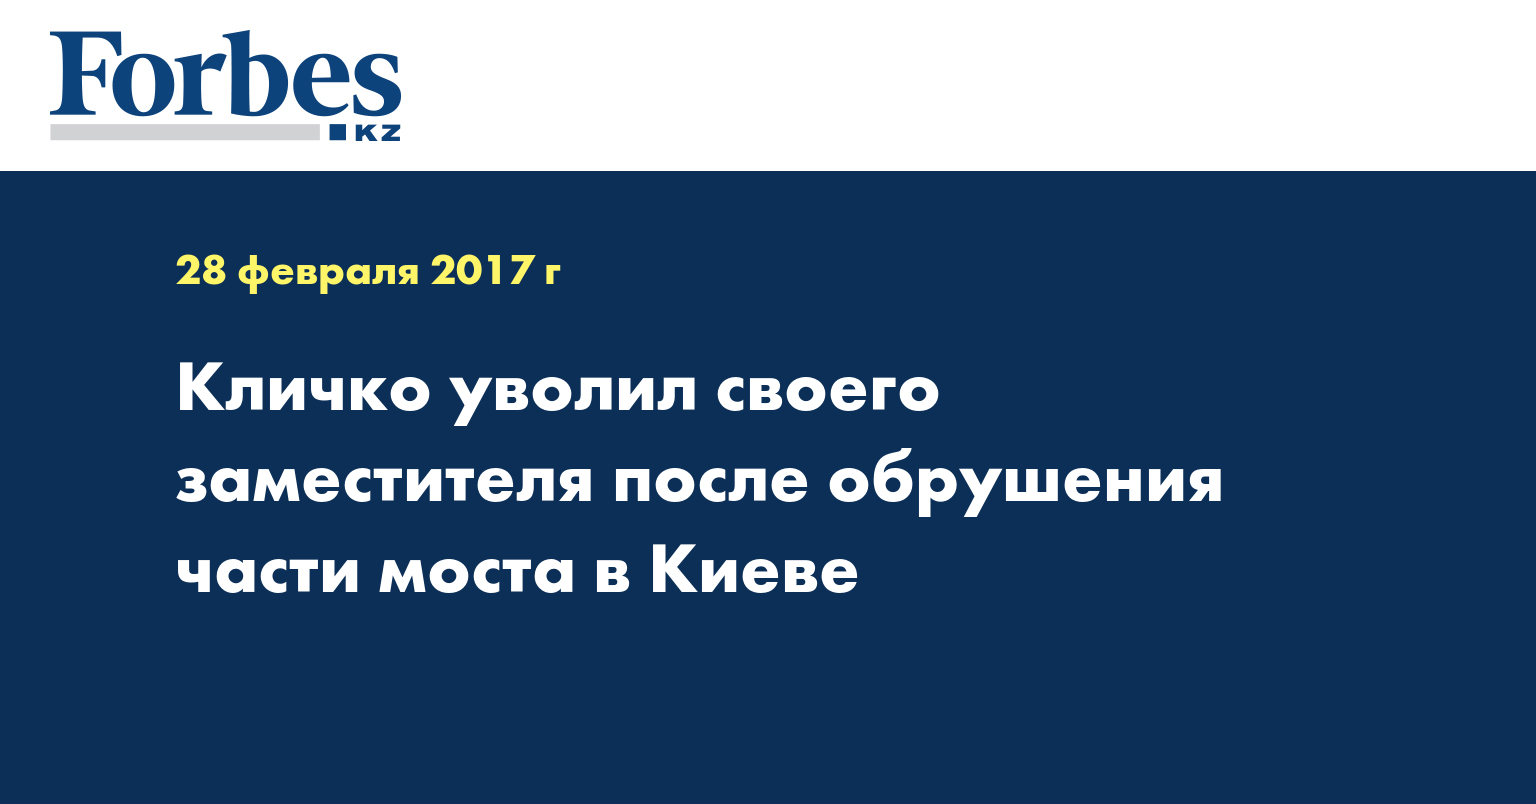 Кличко уволил своего заместителя после обрушения части моста в Киеве